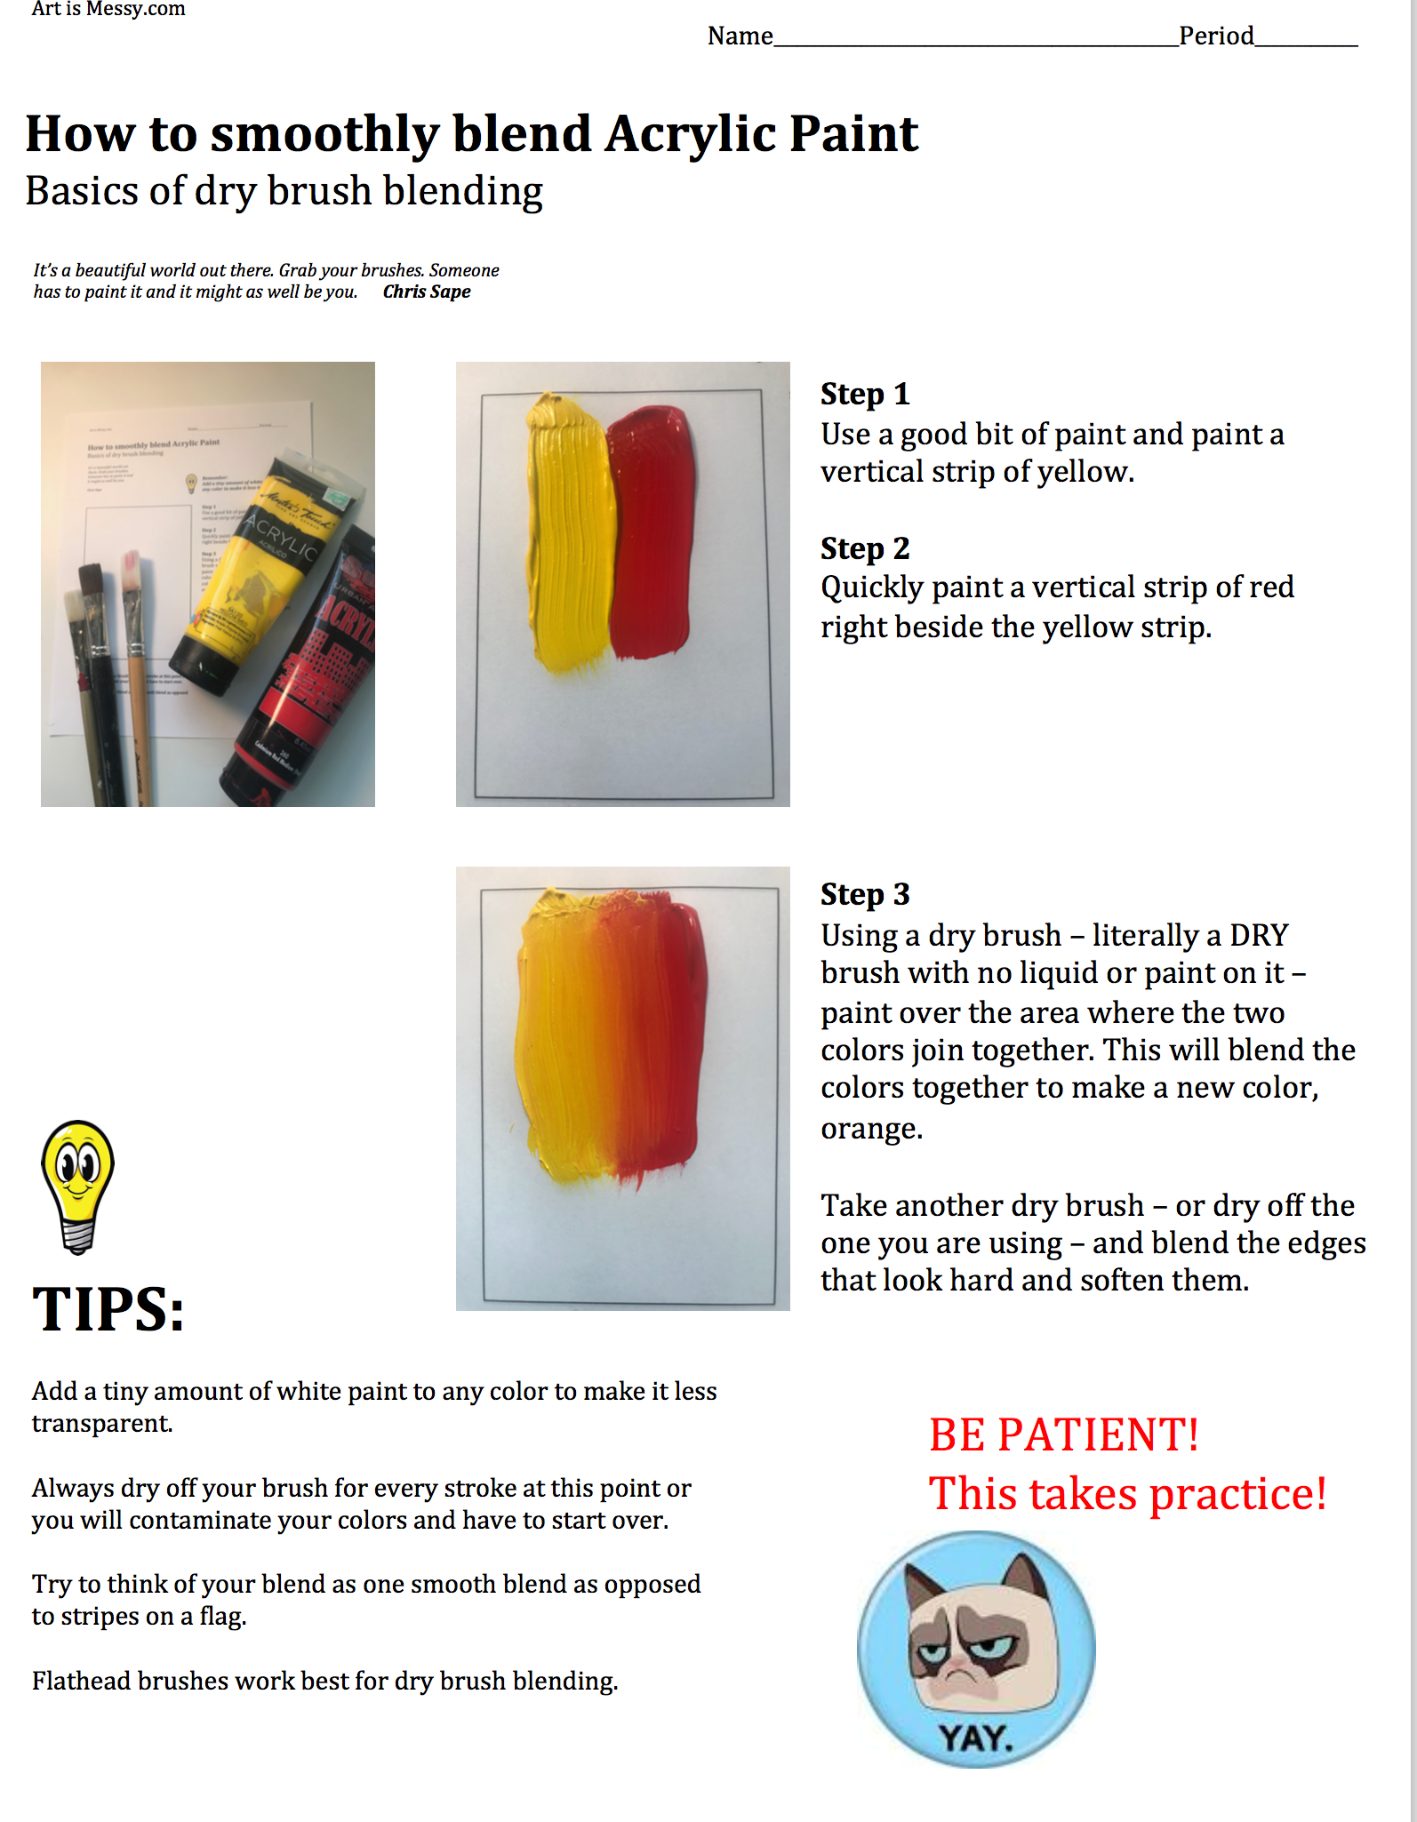 Basics In Blending Acrylic Paint For Beginners